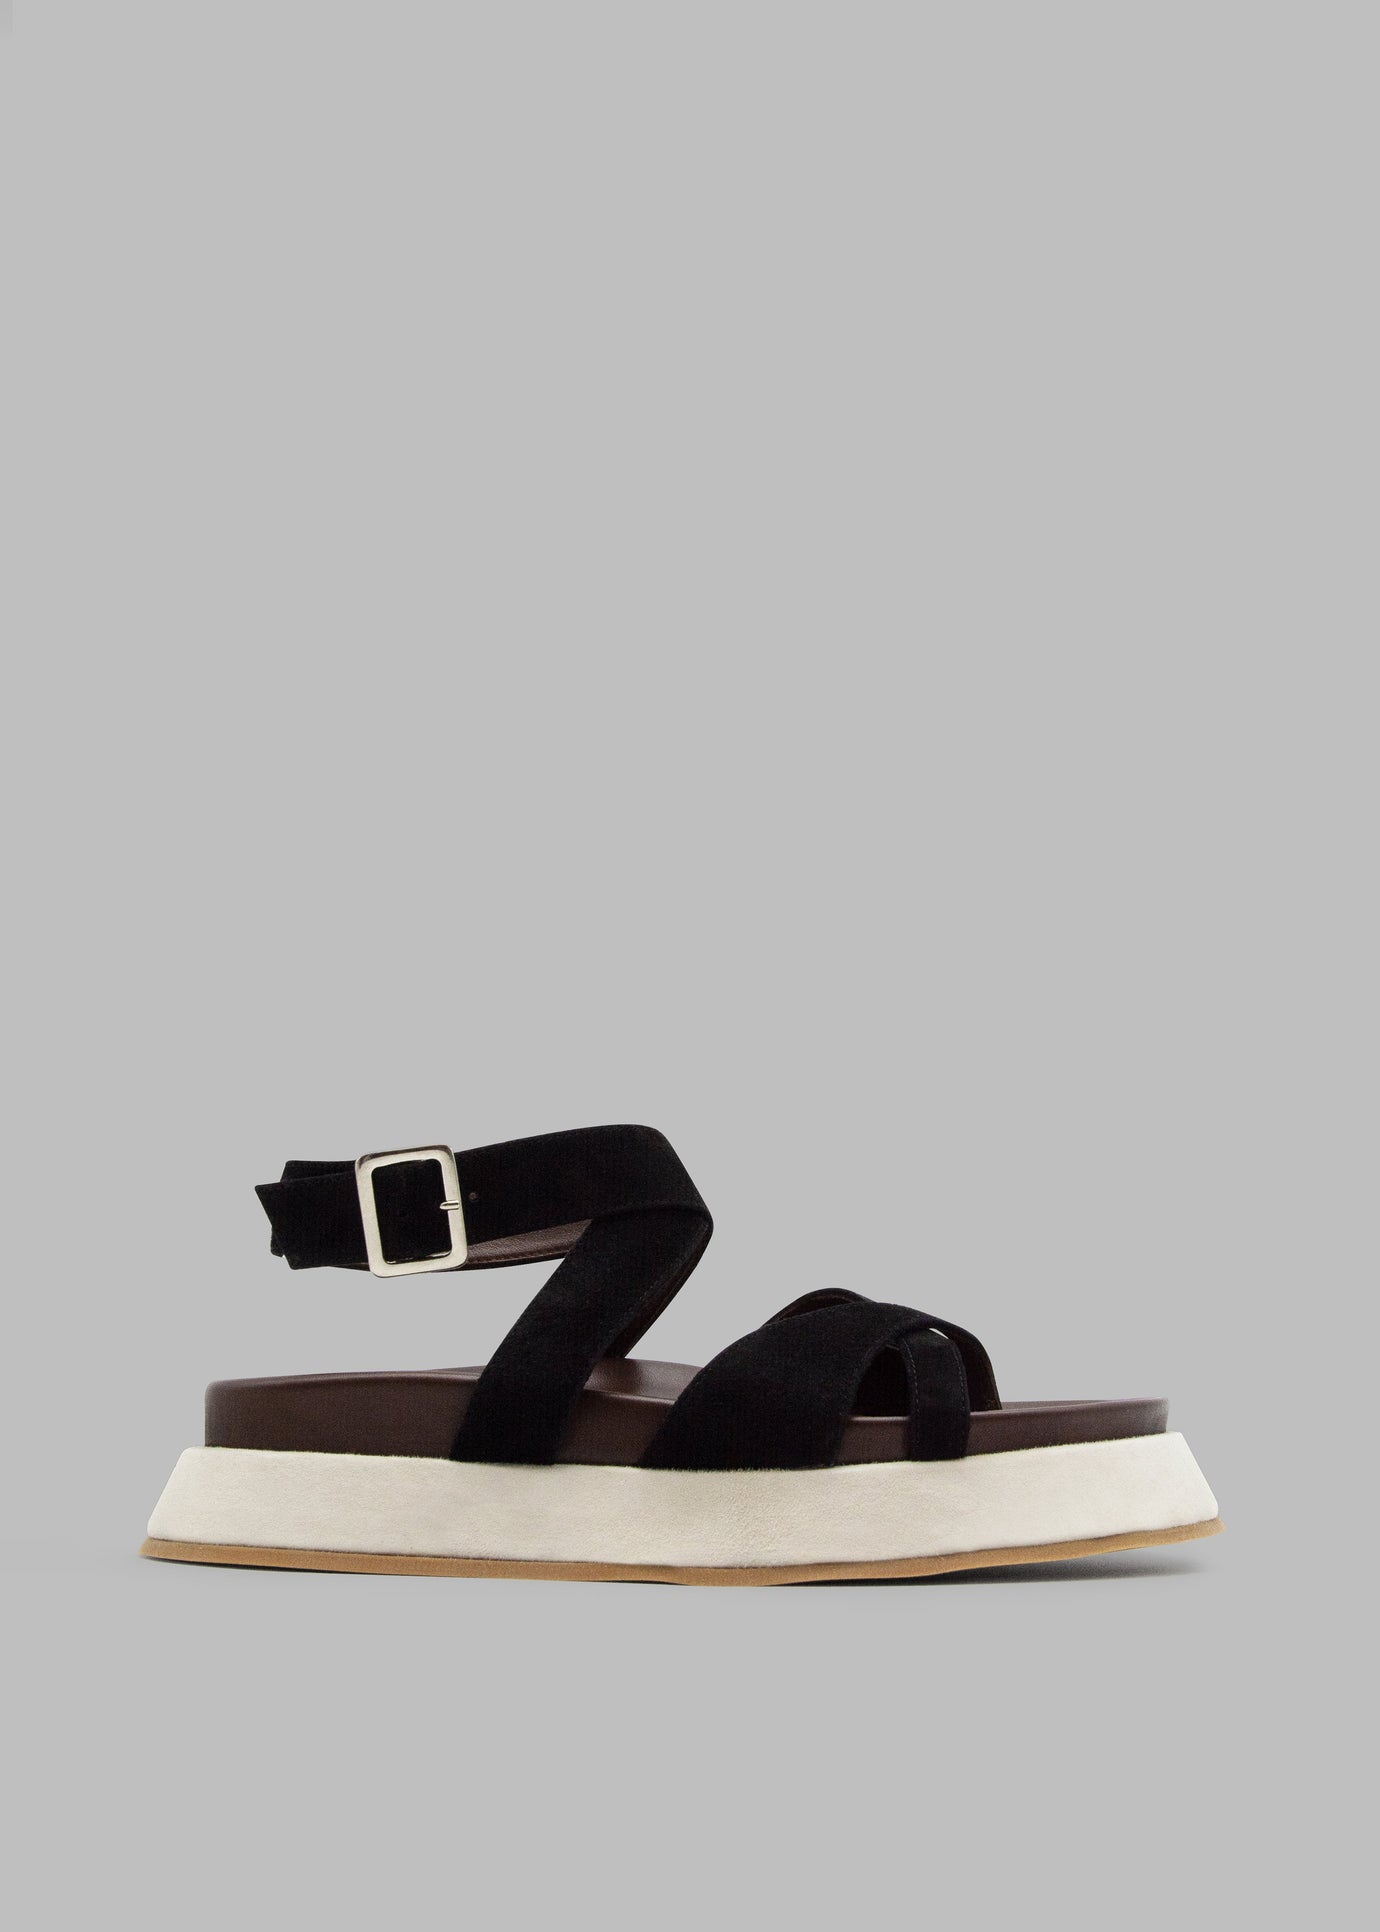 Gia Borghini Rosie 41 Flat Sandals - Black/Chocolate/Beige